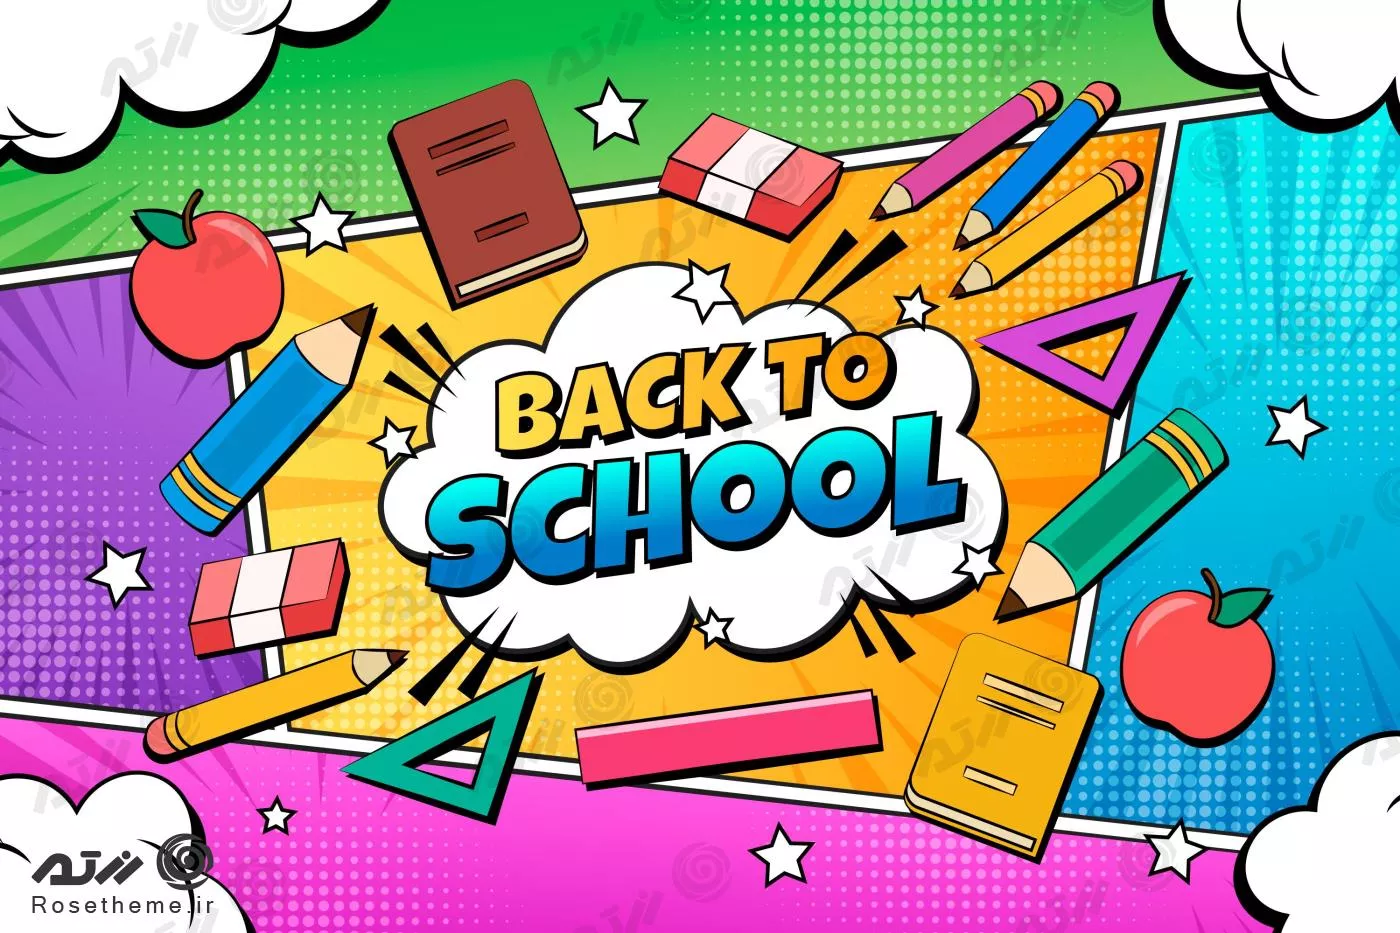 وکتور رایگان EPS و Ai لایه باز بازگشت به مدرسه به همراه لوازم تحریر رنگی مناسب بنر یا پوستر 22146